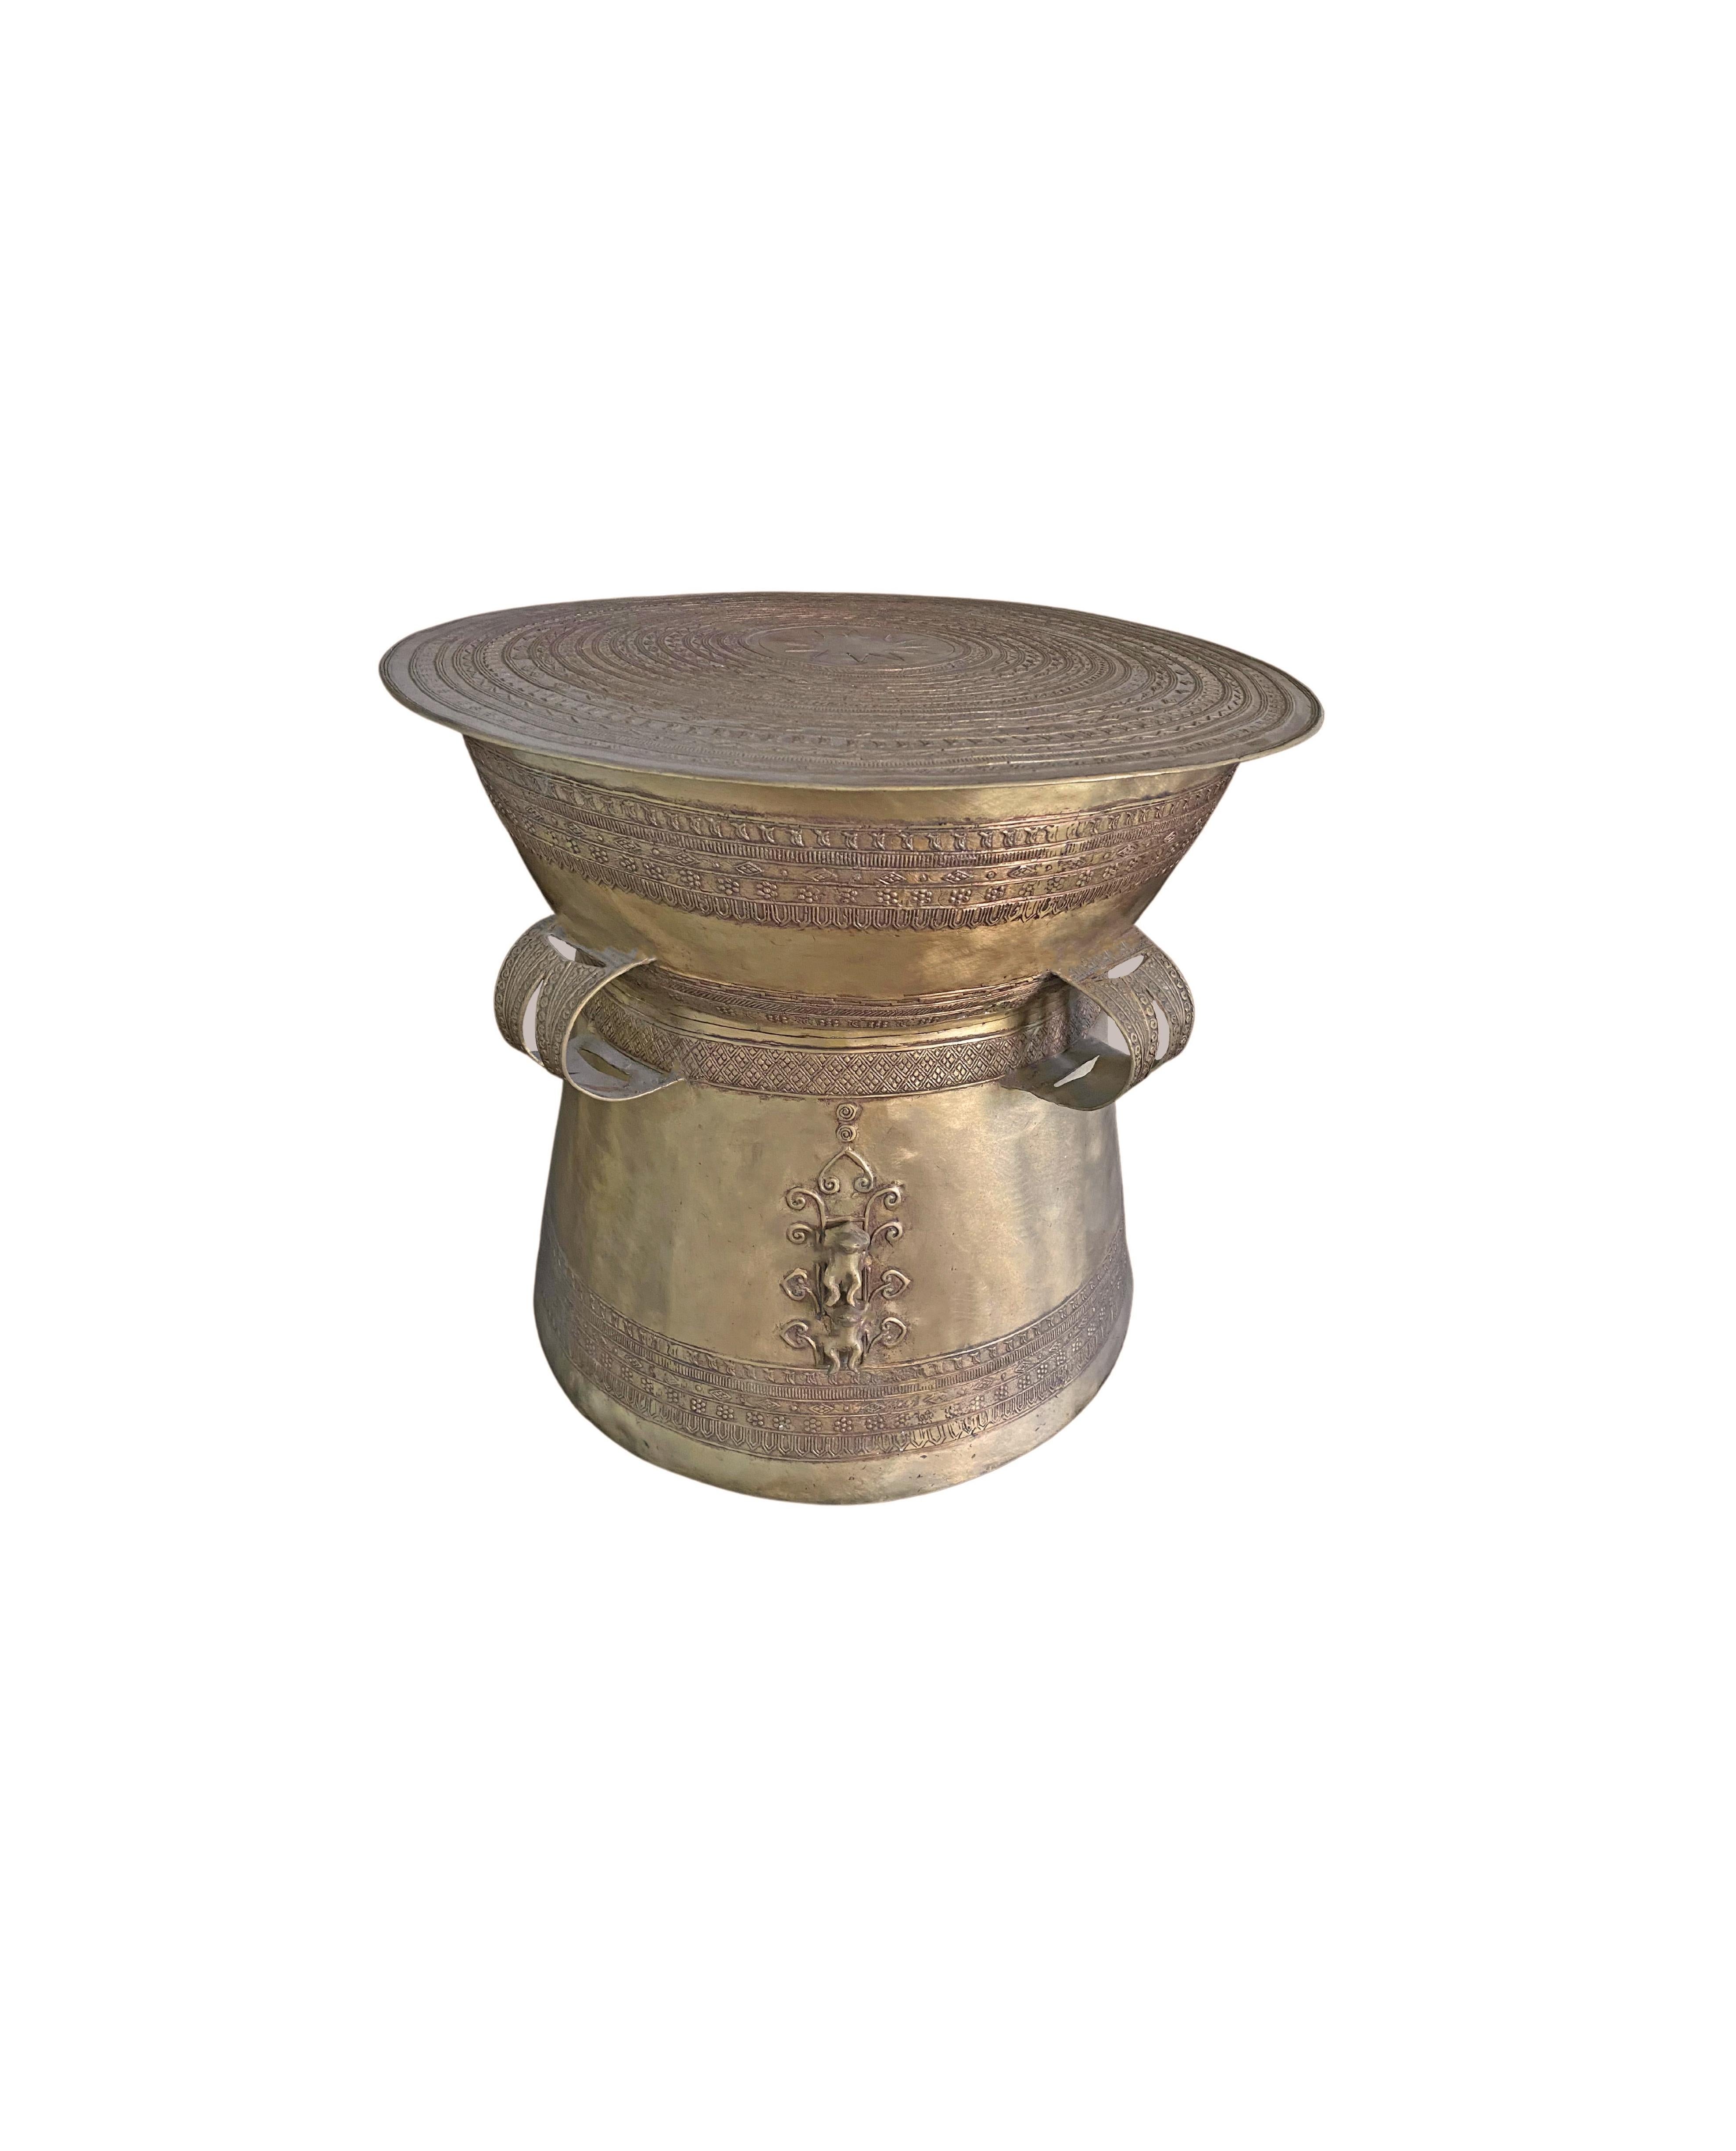 Diese gusseiserne Bronzetrommel ist von den Regentrommeln Südostasiens inspiriert, insbesondere von denen in Birma, Laos und auf einigen der östlichen Inseln Indonesiens. Diese Trommel hat drei eingravierte Griffe. Sowohl an den Seiten als auch auf